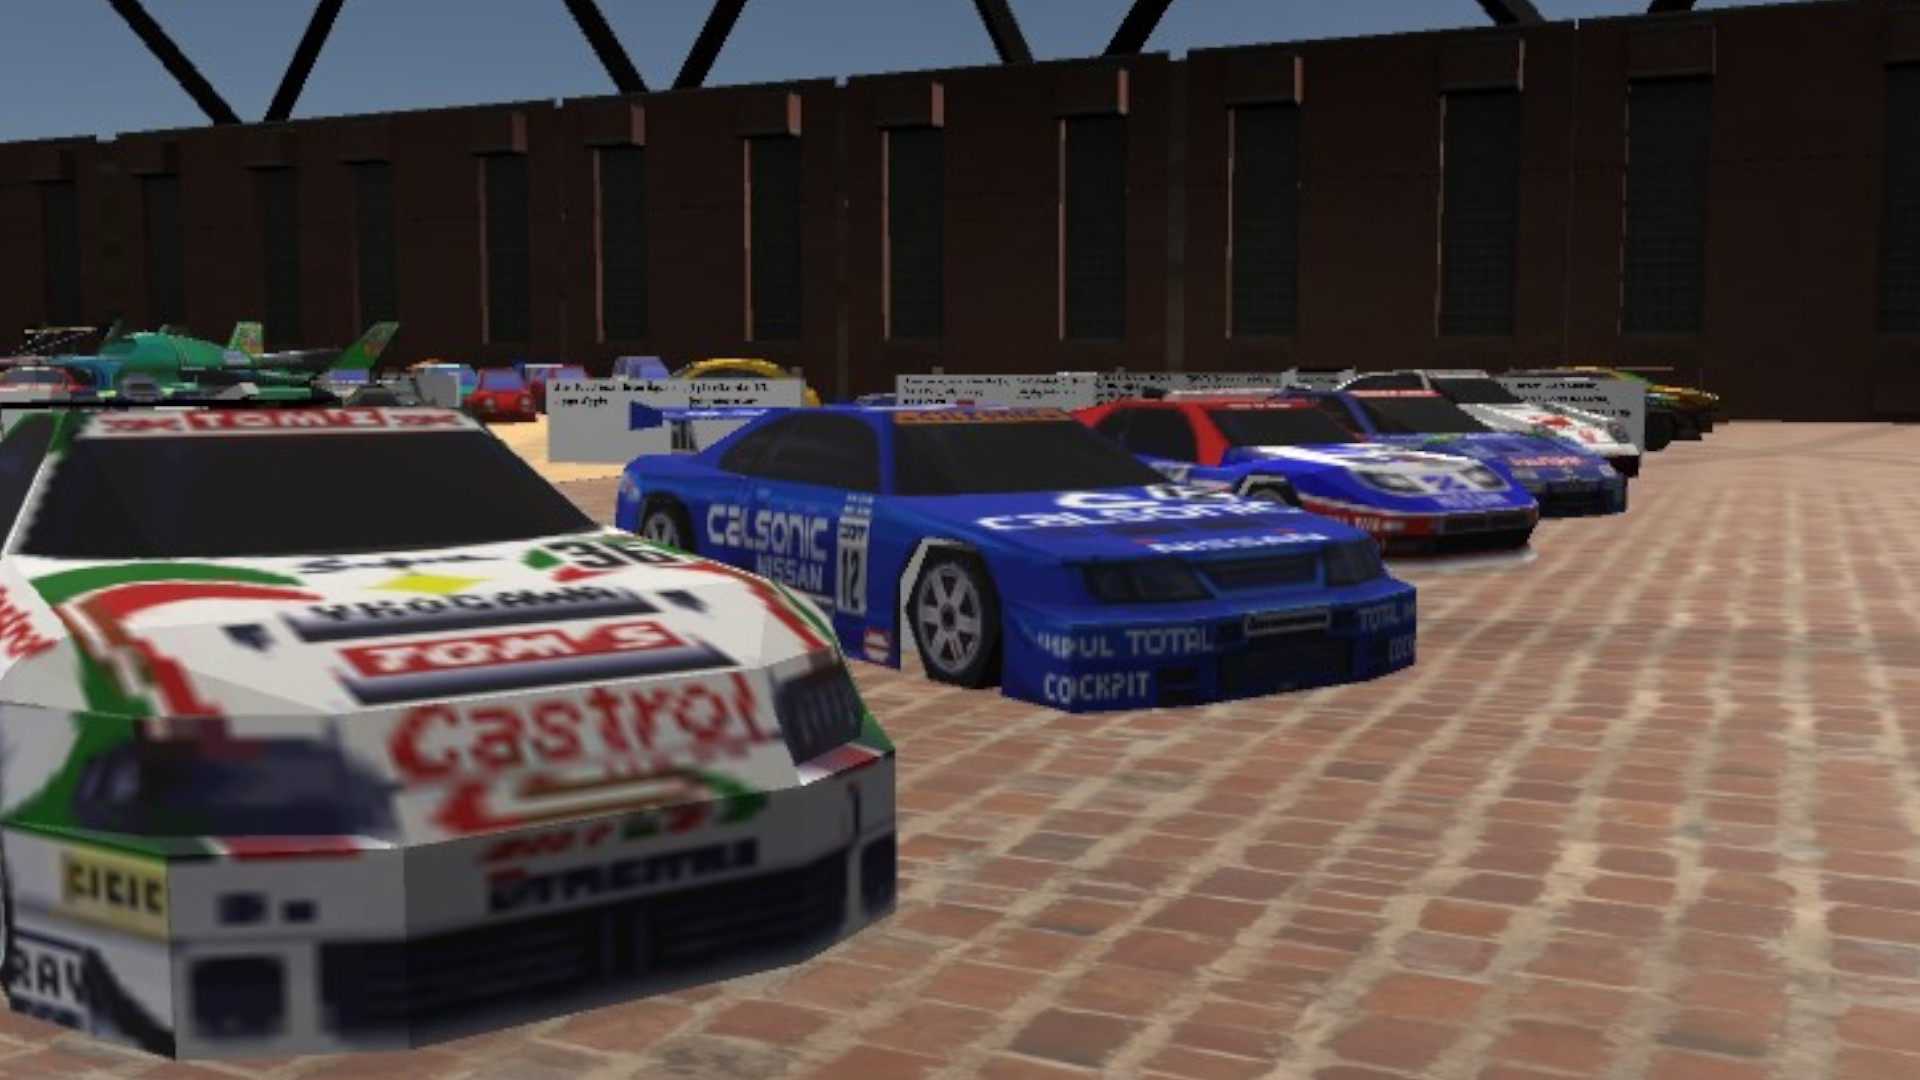 متحف السيارات 64 هو متحف افتراضي للسيارات من ألعاب نينتندو 64 240